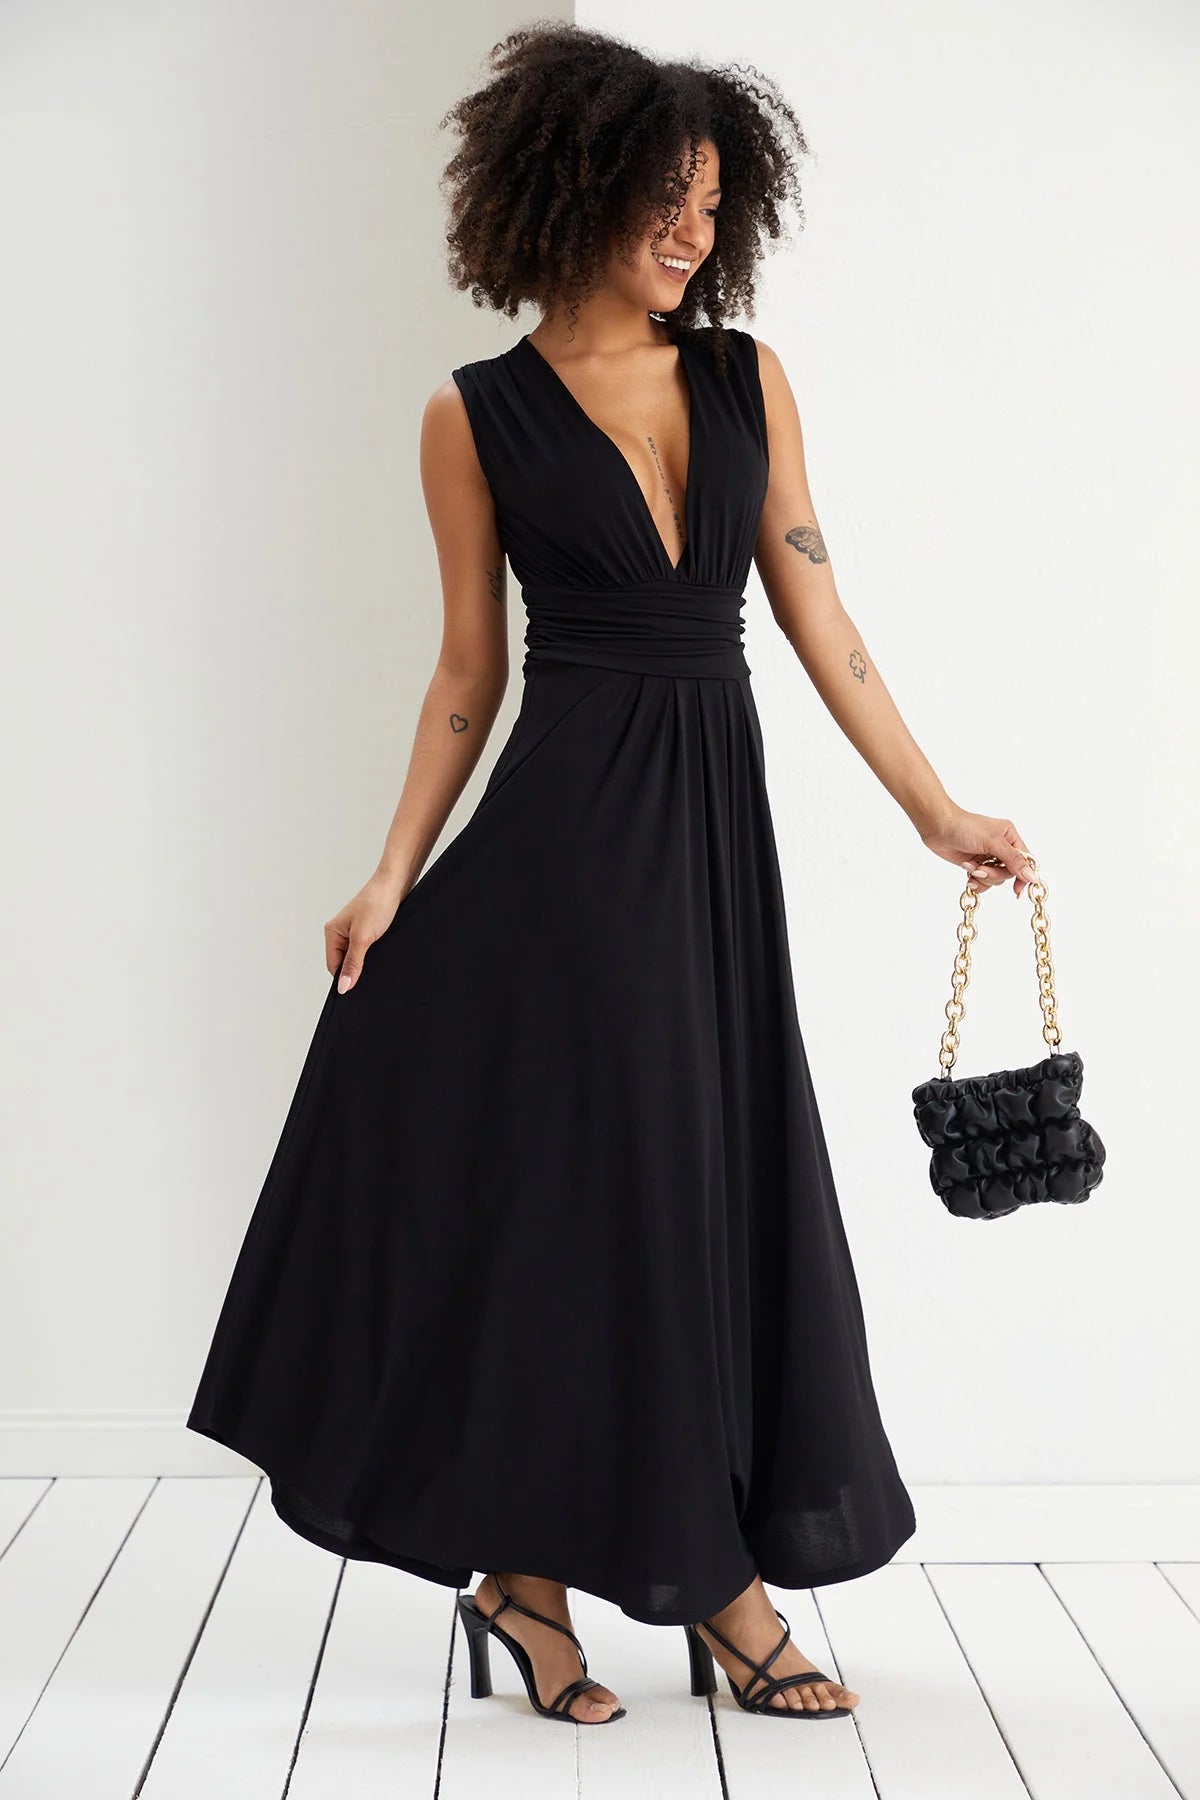 jenerique-black-dress